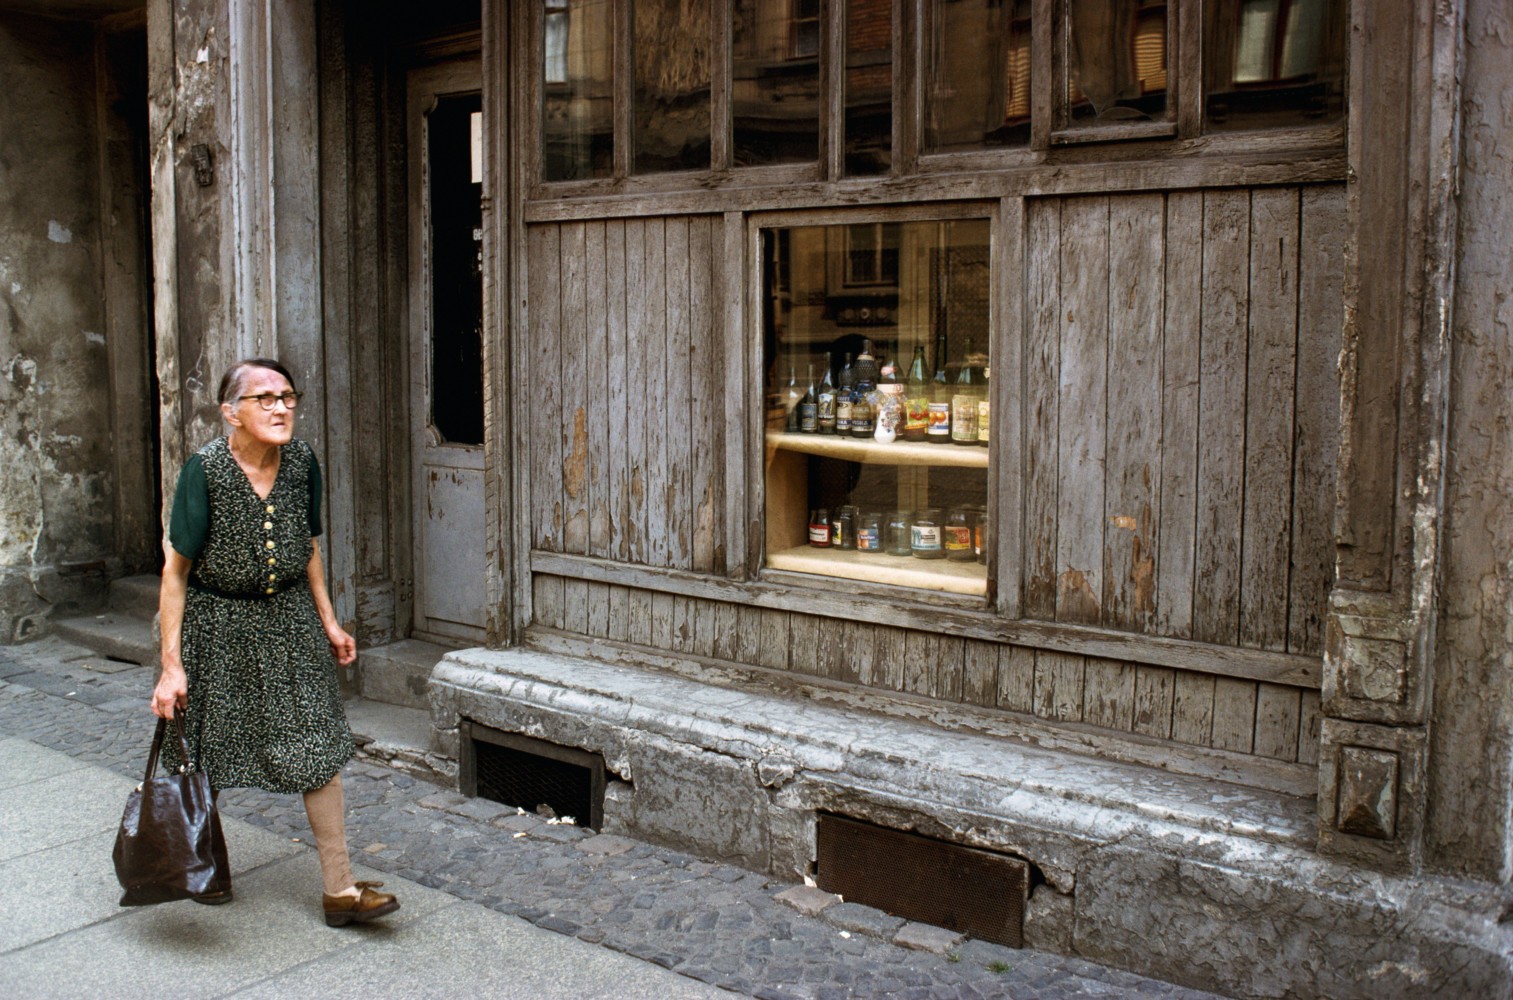 Витрина магазина, Восточный Берлин, Восточная Германия, 1975 год. Фотограф Томас Хёпкер